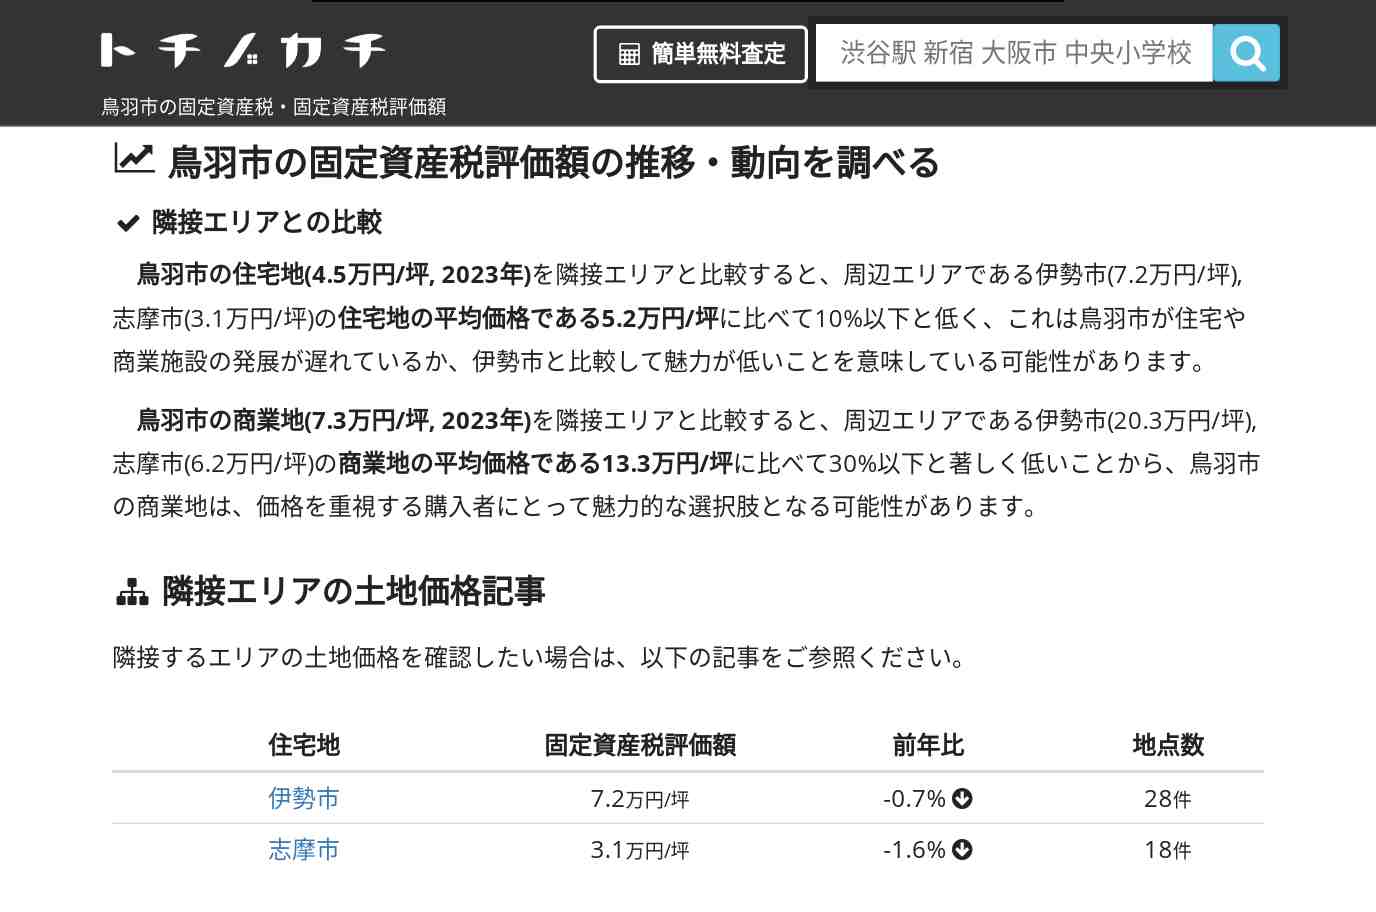 神島小学校(三重県 鳥羽市)周辺の固定資産税・固定資産税評価額 | トチノカチ